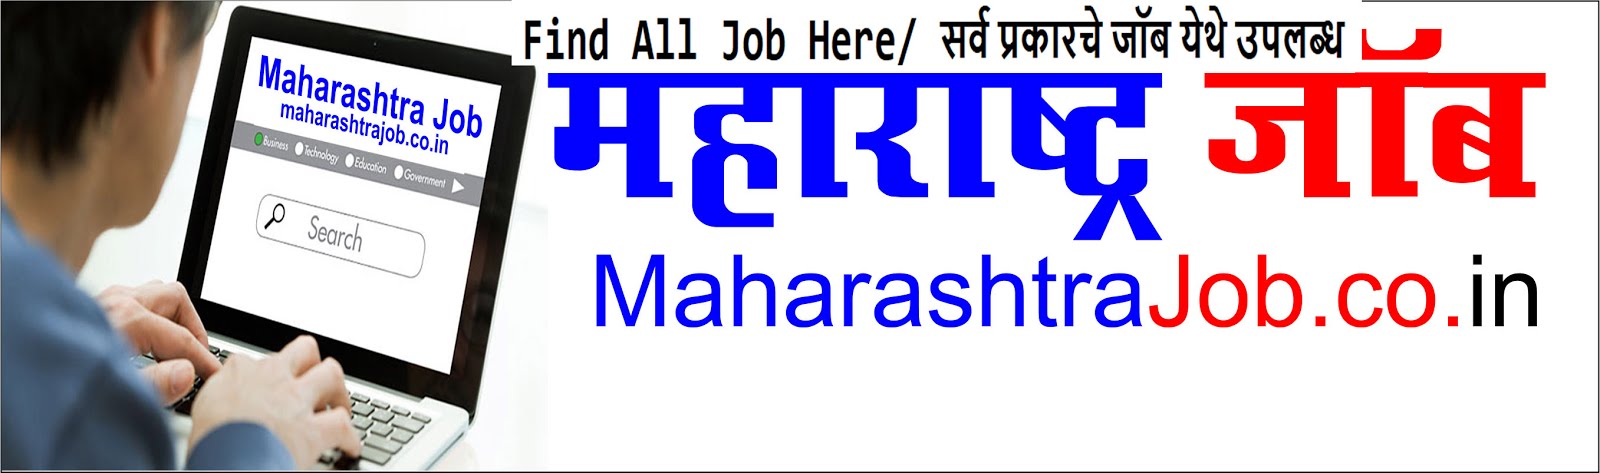 Maharashtra Job